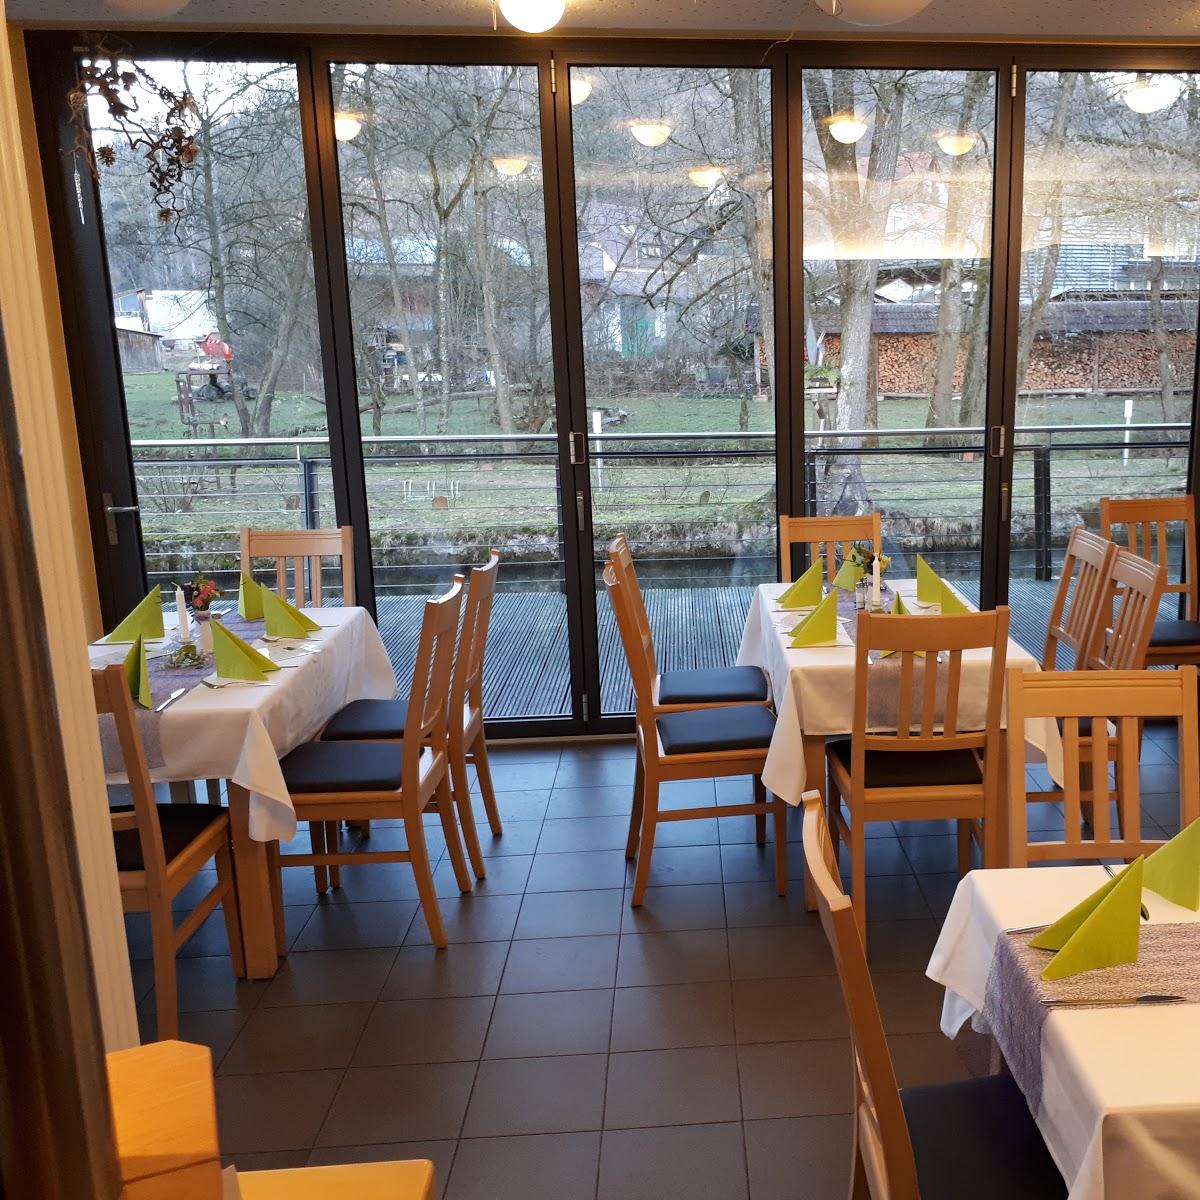 Restaurant "Café Inselblick" in Vorra